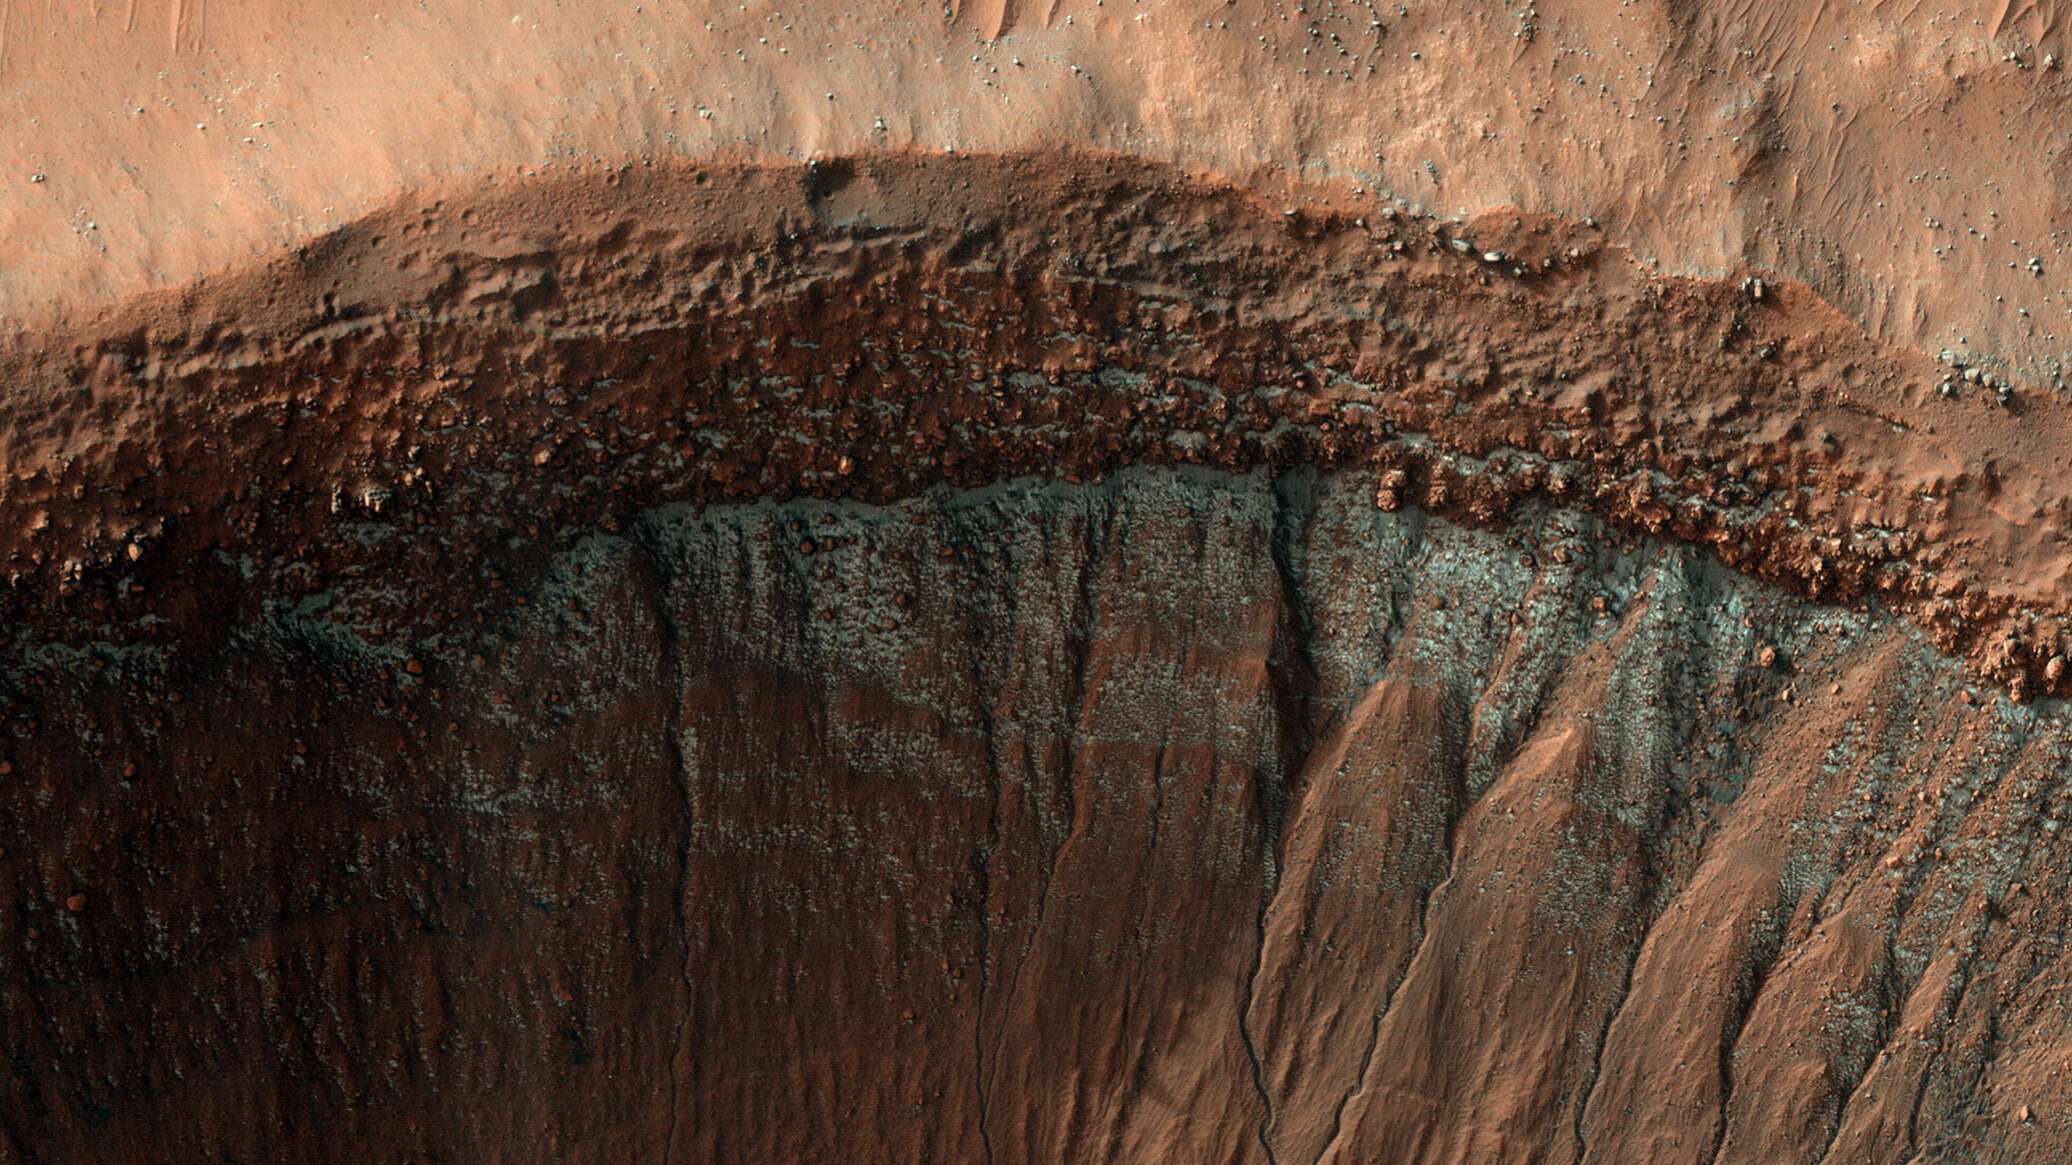 صخرة غريبة على المريخ تثير اهتمام العلماء... صور وفيديو